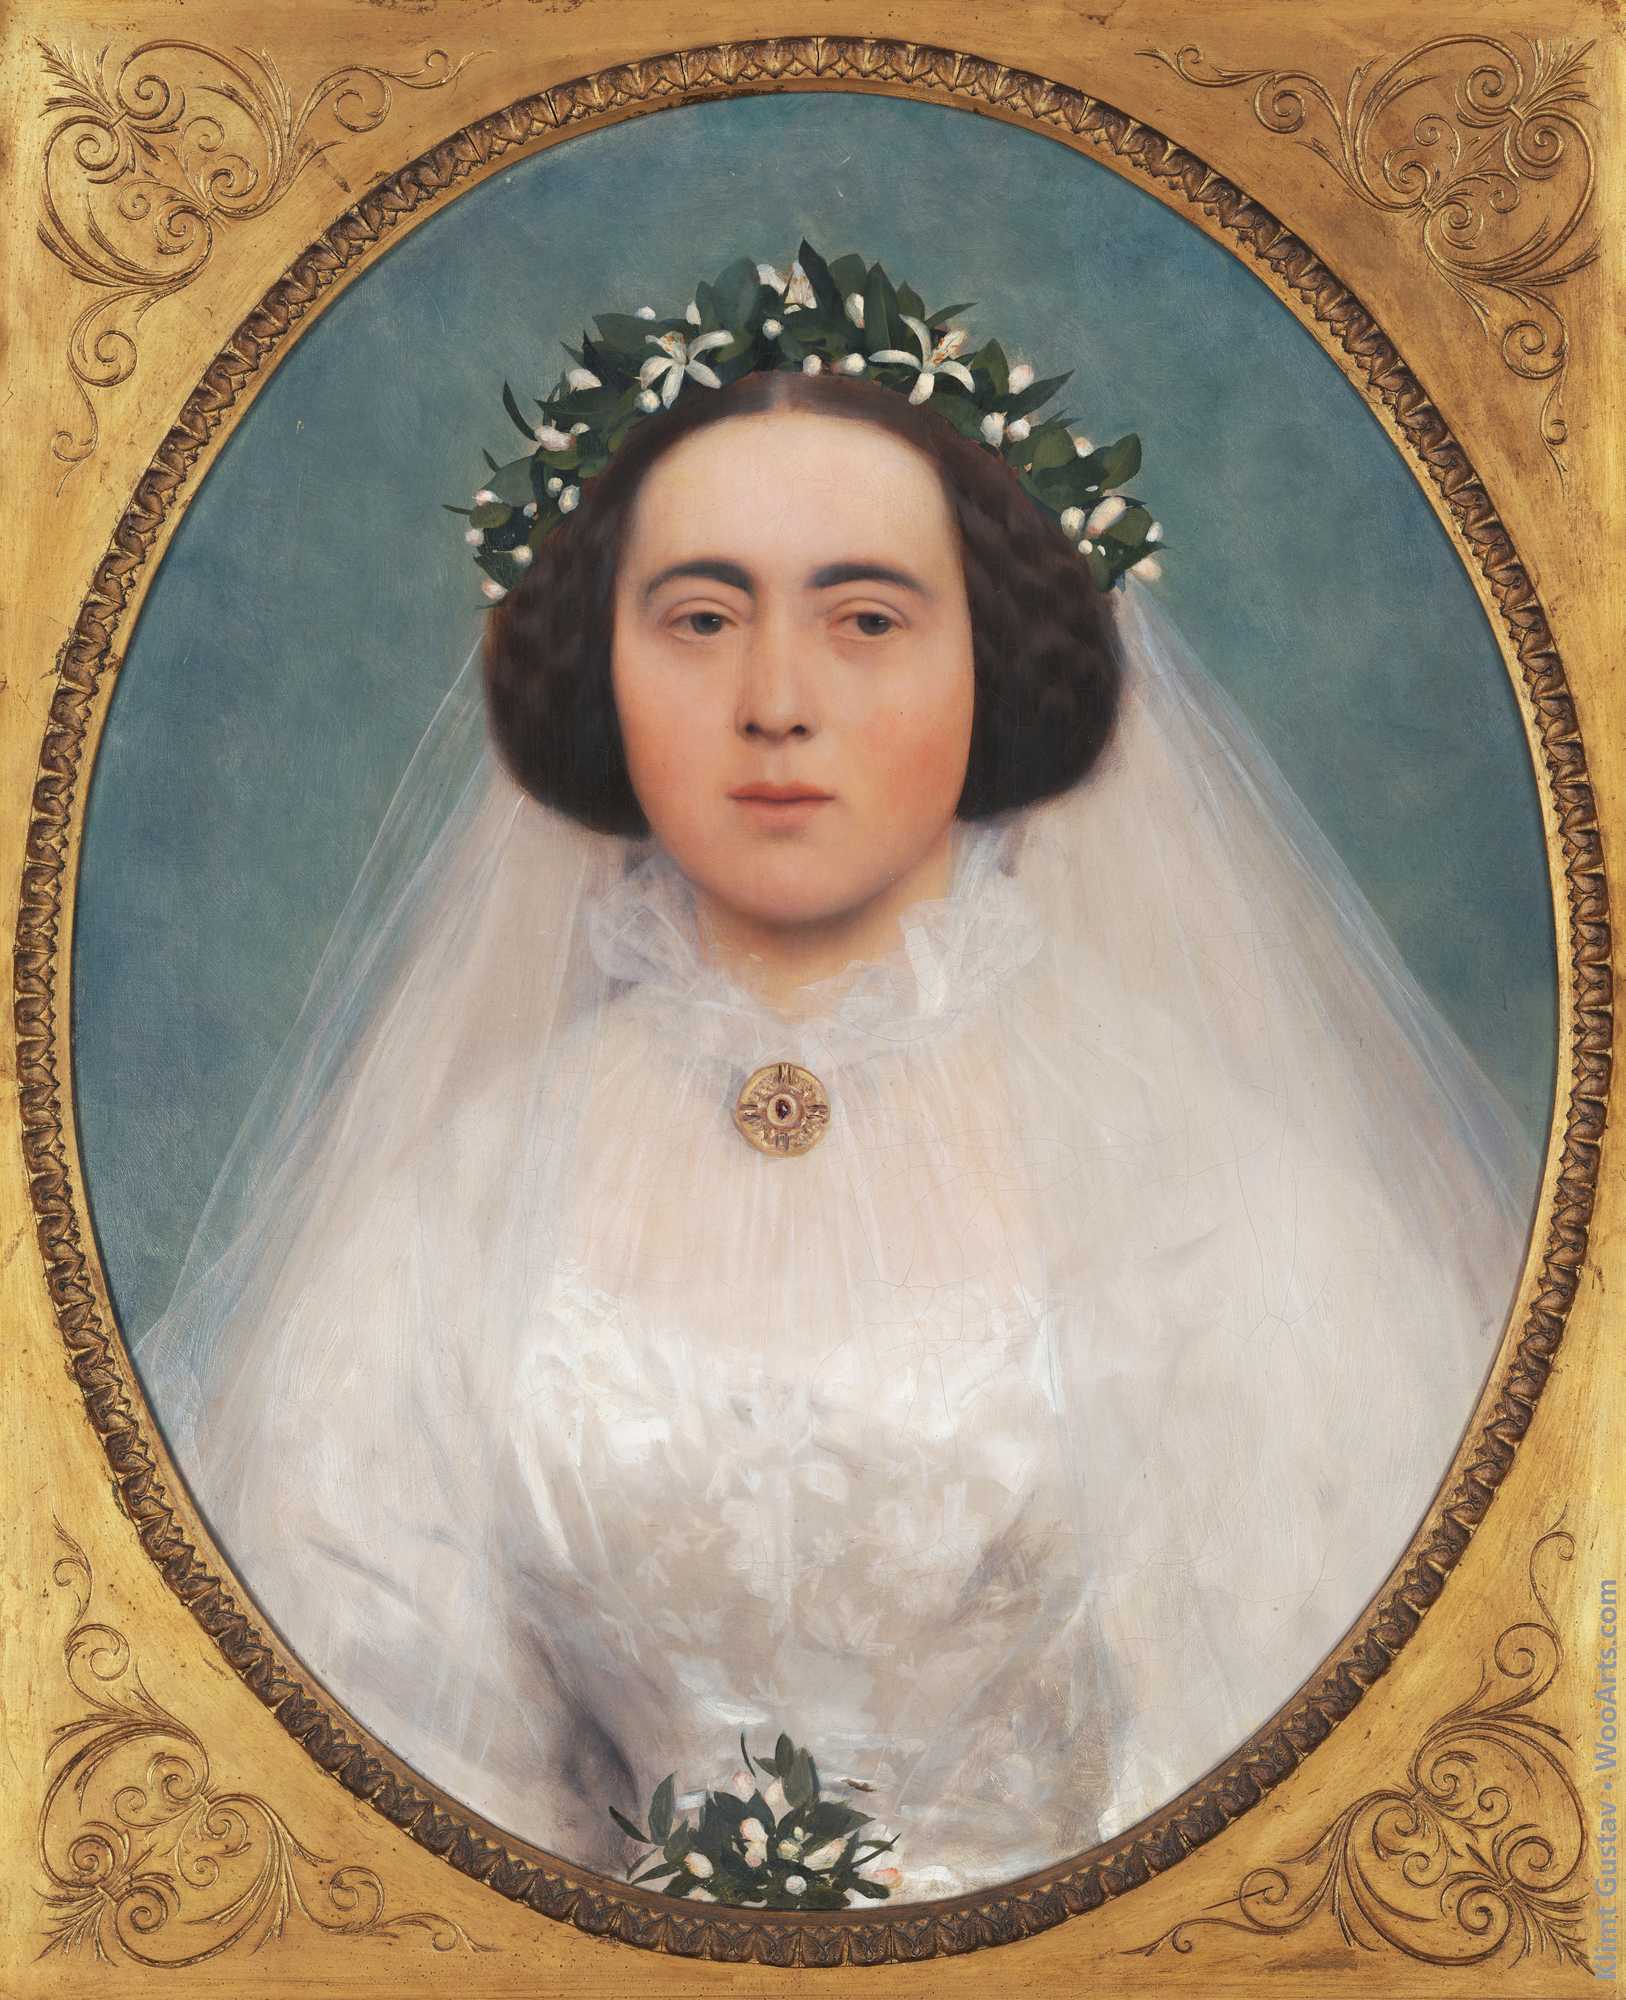 Marie Kerner von Marilaun as a bride Gustav Klimt 1891-92